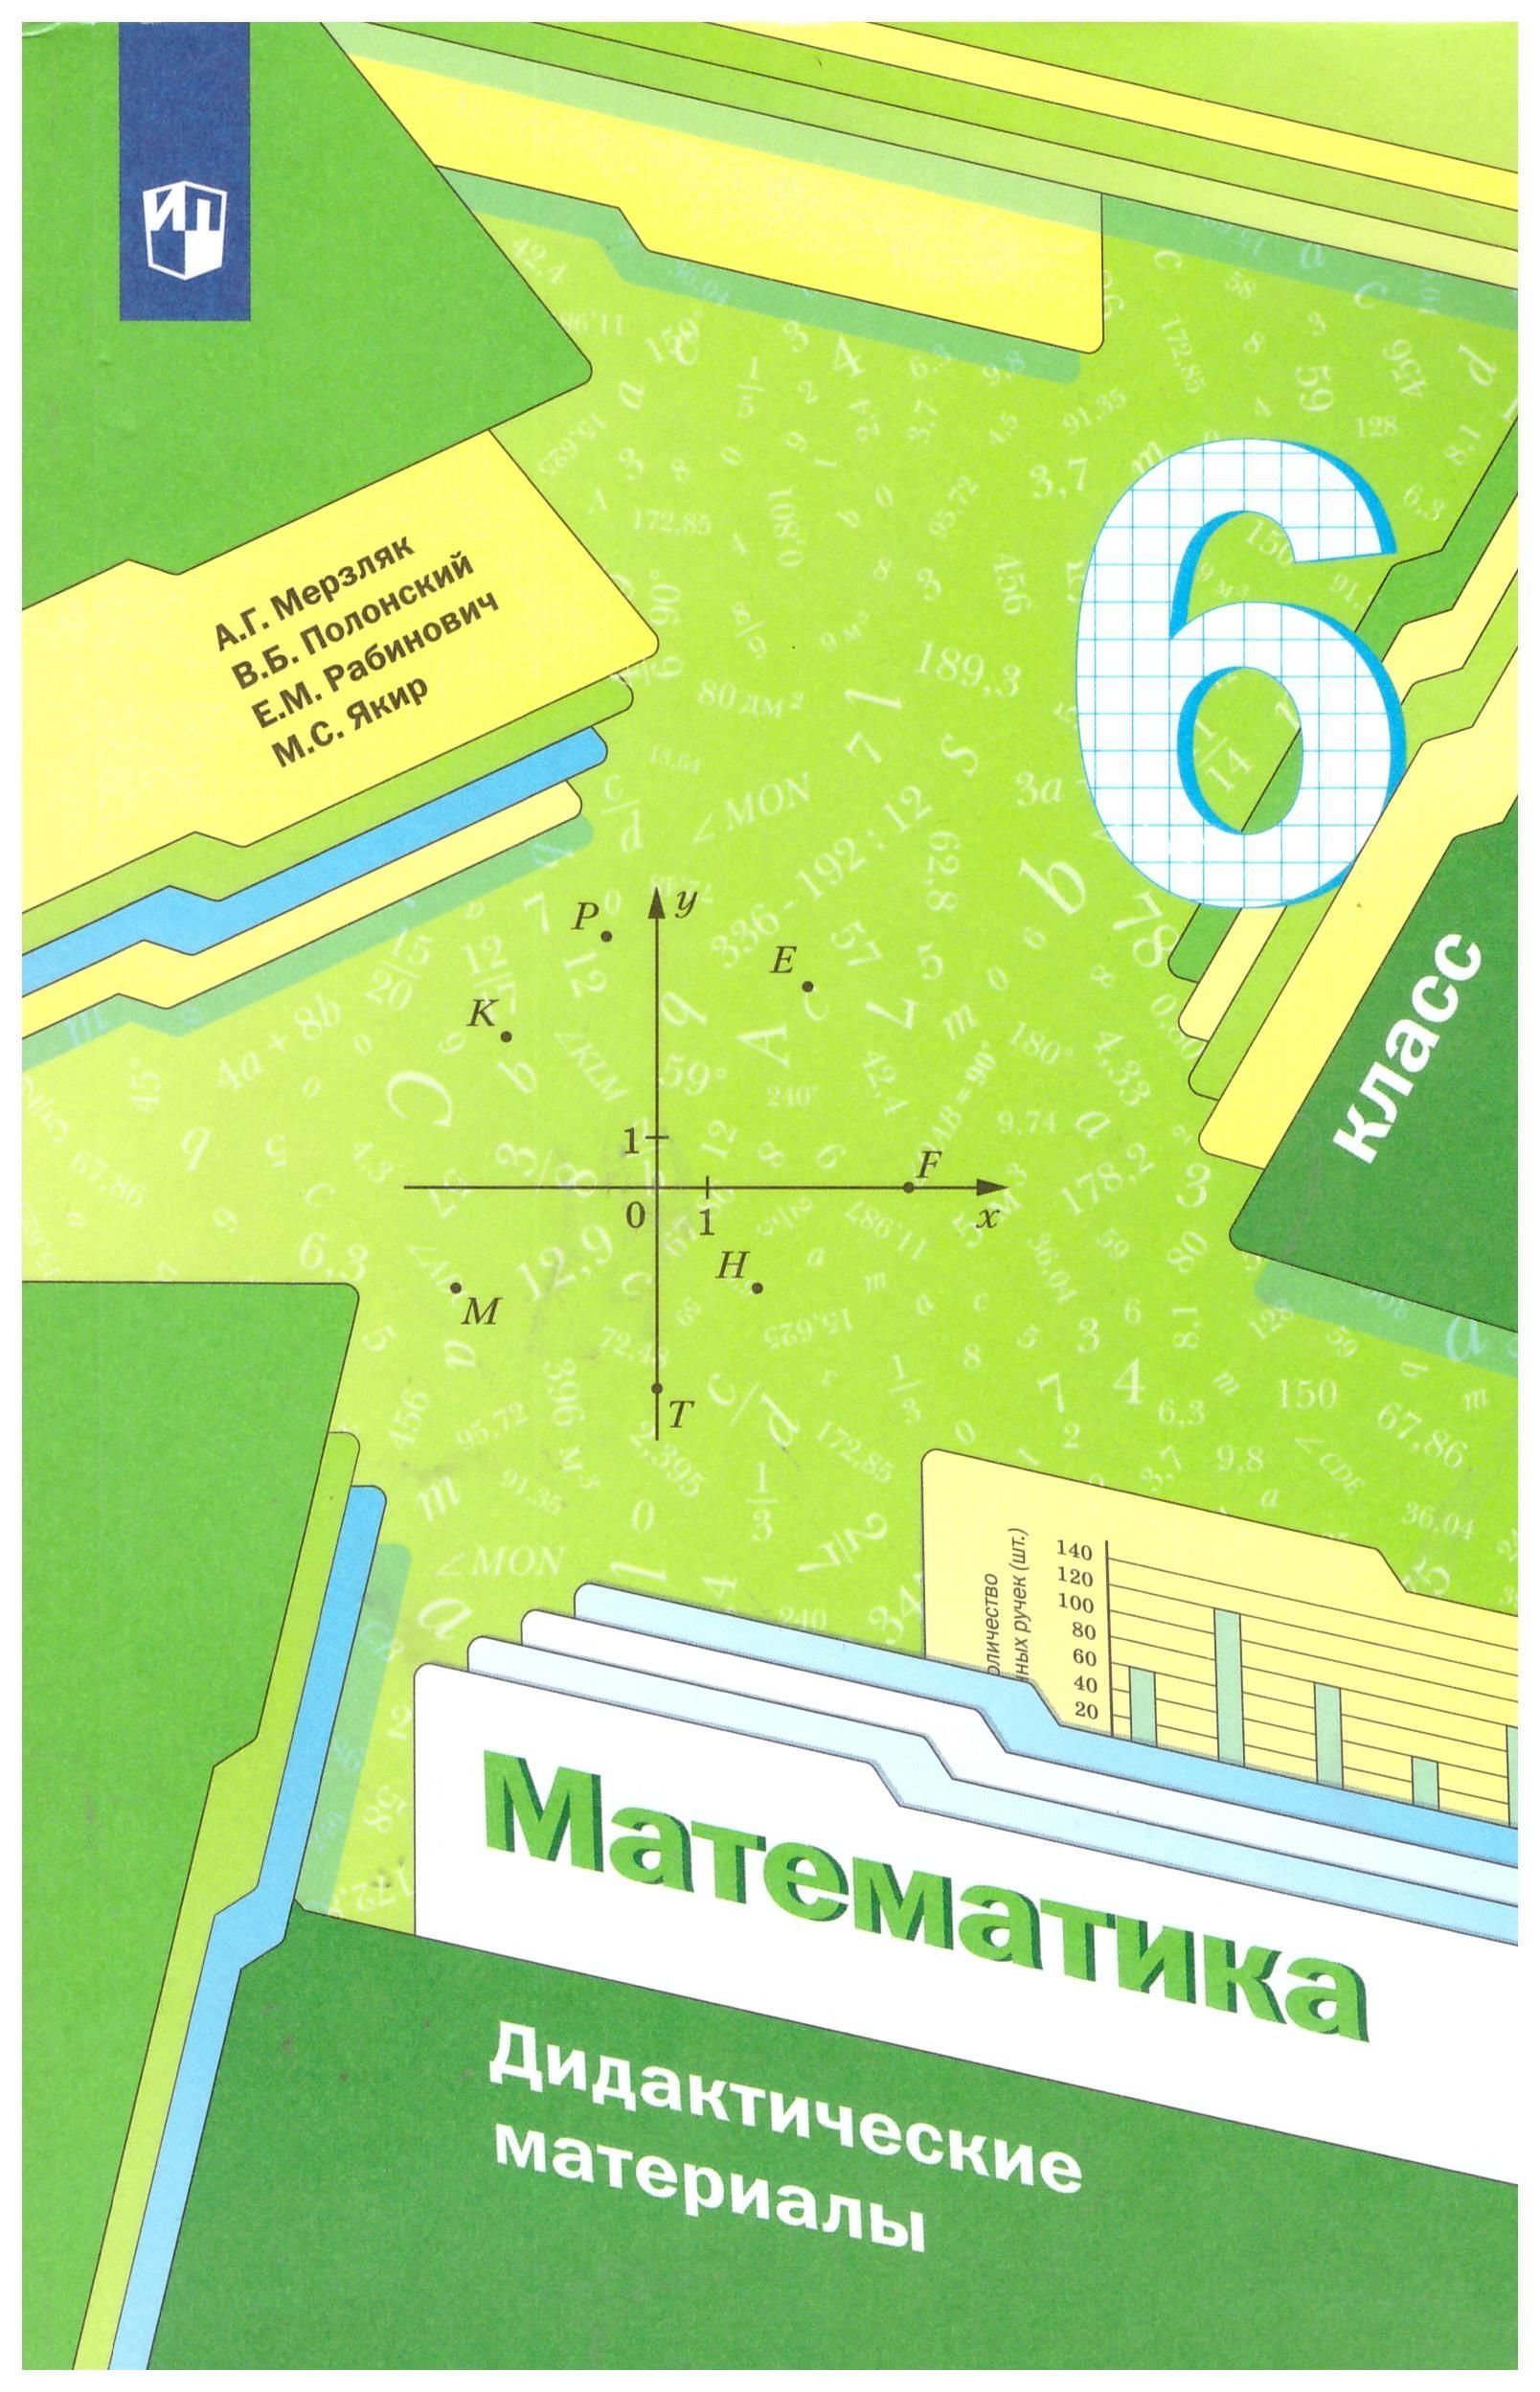 Мерзляк 843. Математике 6 класс Мерзляк дидактический материал. Учебник по математике 6 класс дидактический материал Мерзляк. Математика 6 класс дидактические материалы Мерзляк Полонский.